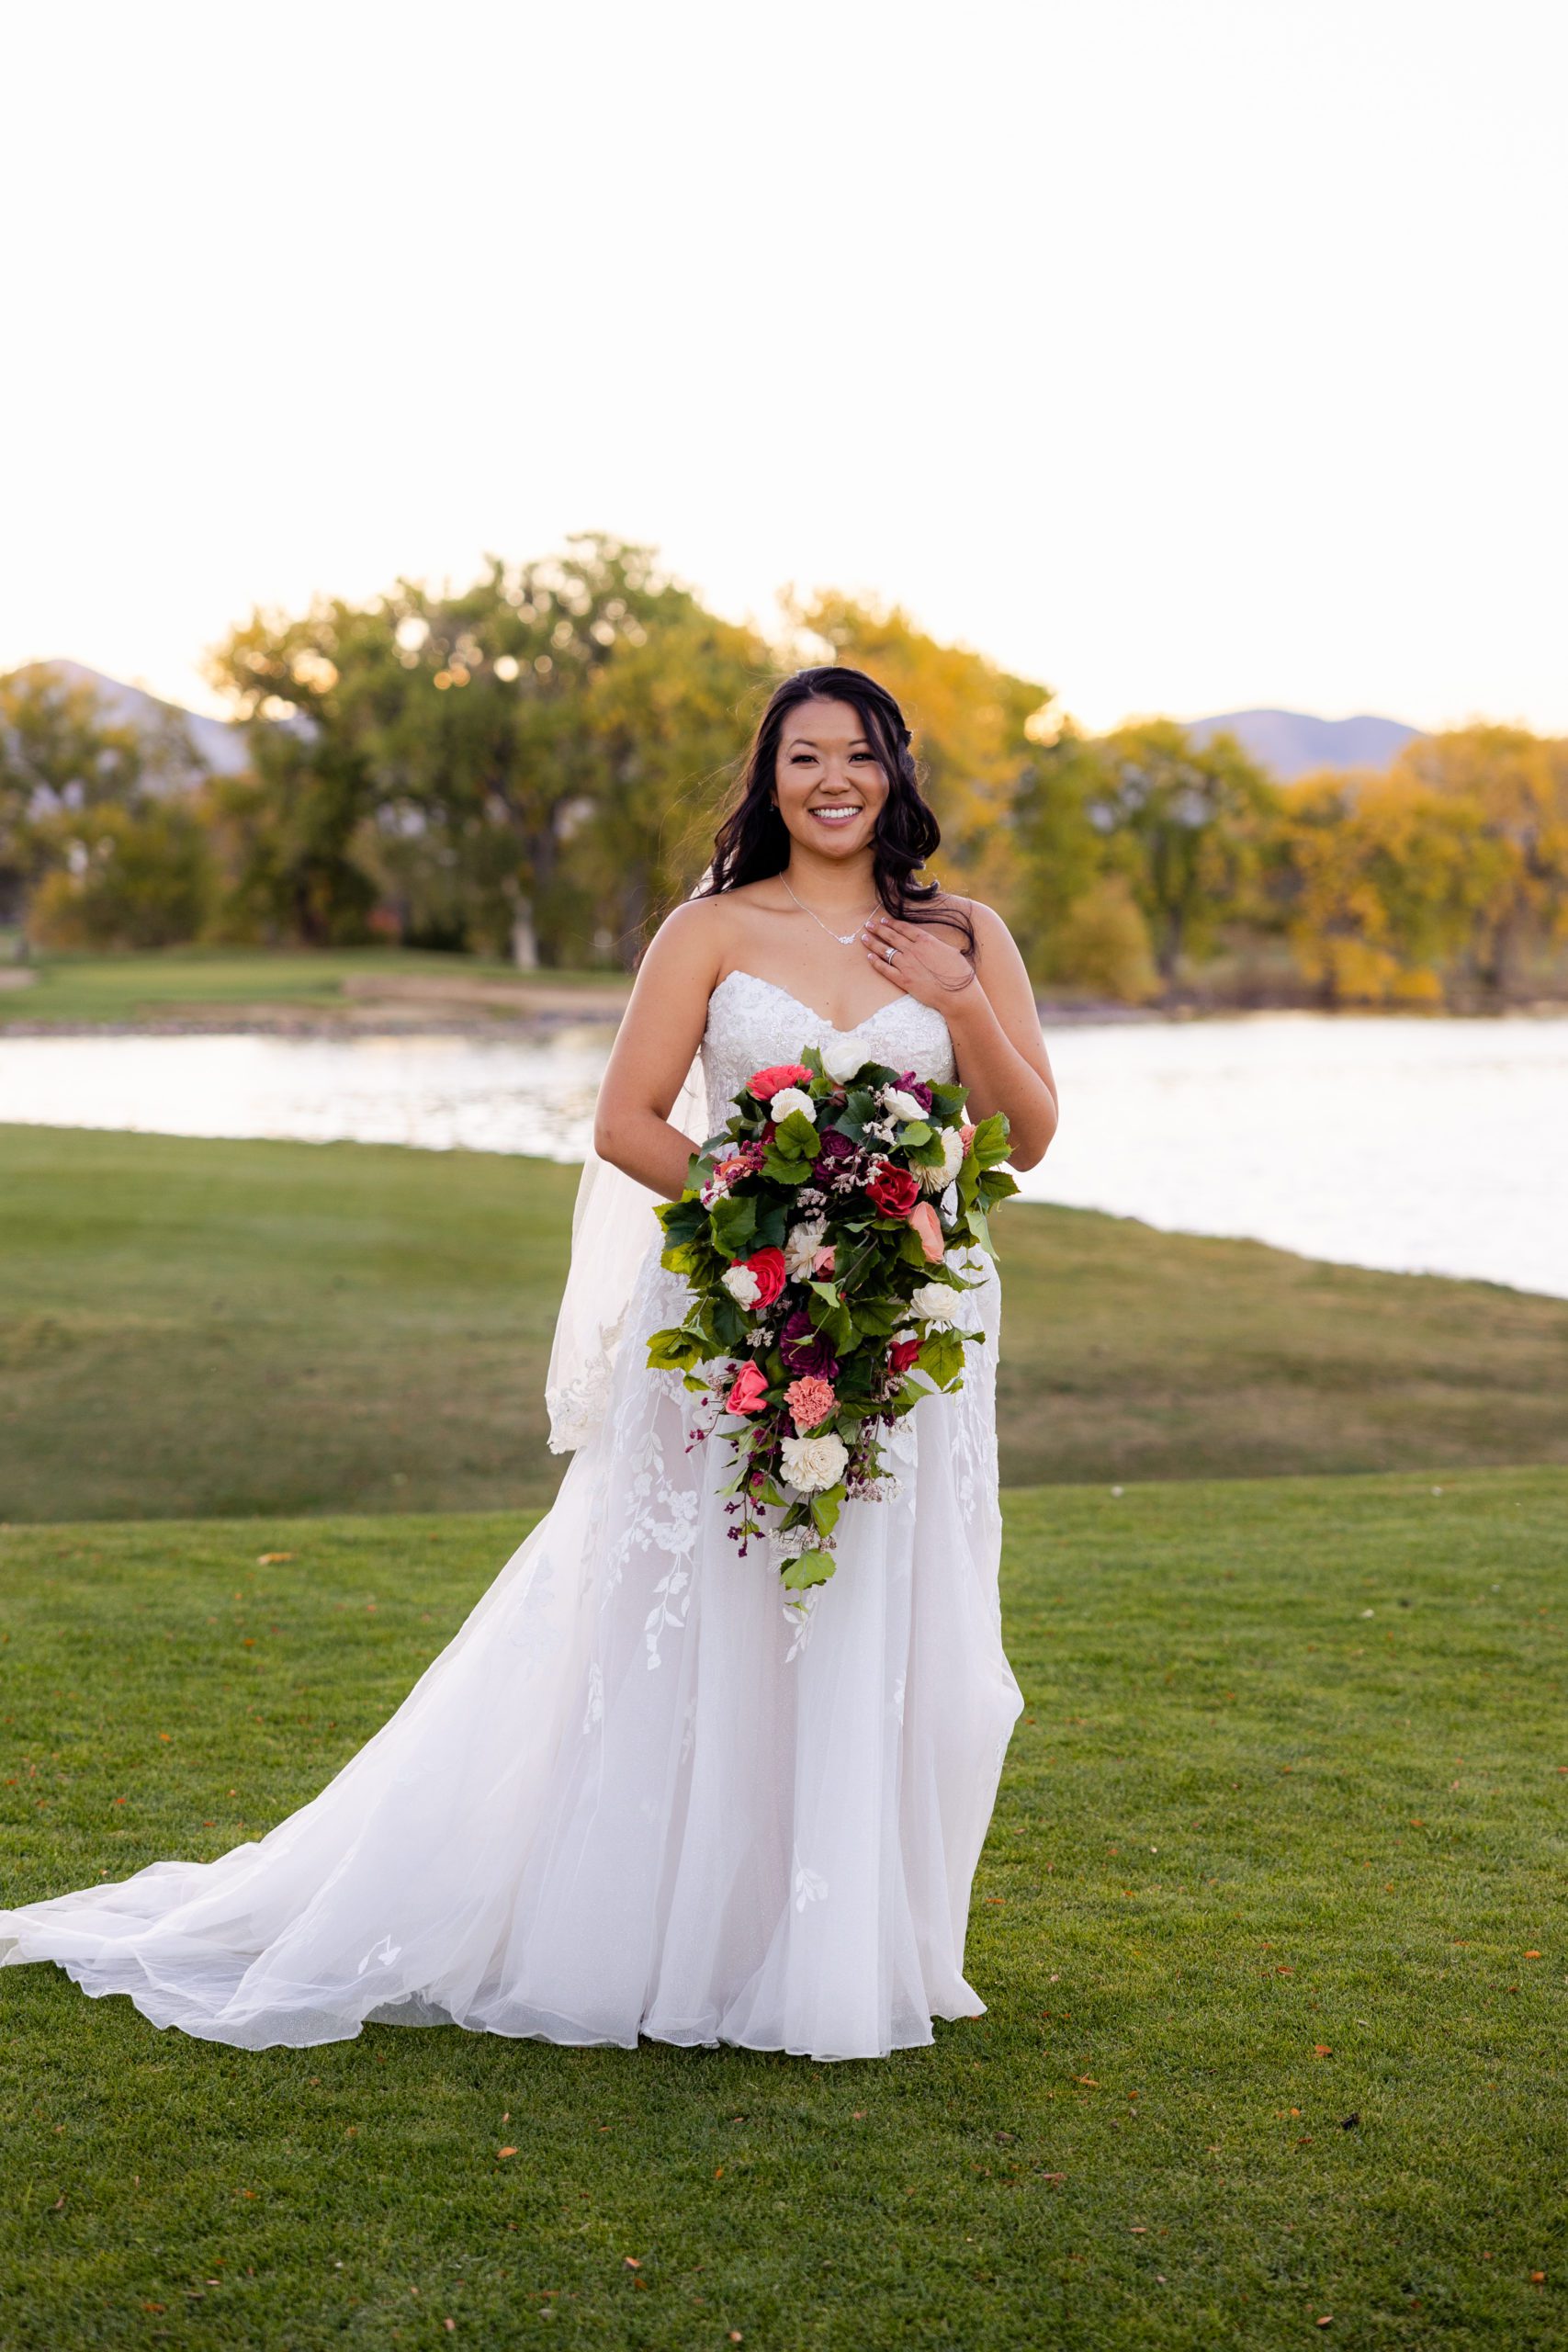 Bridal wedding portrait, bridal bouquet, Sola wood flower bouquet, Golf course wedding, Country Club wedding